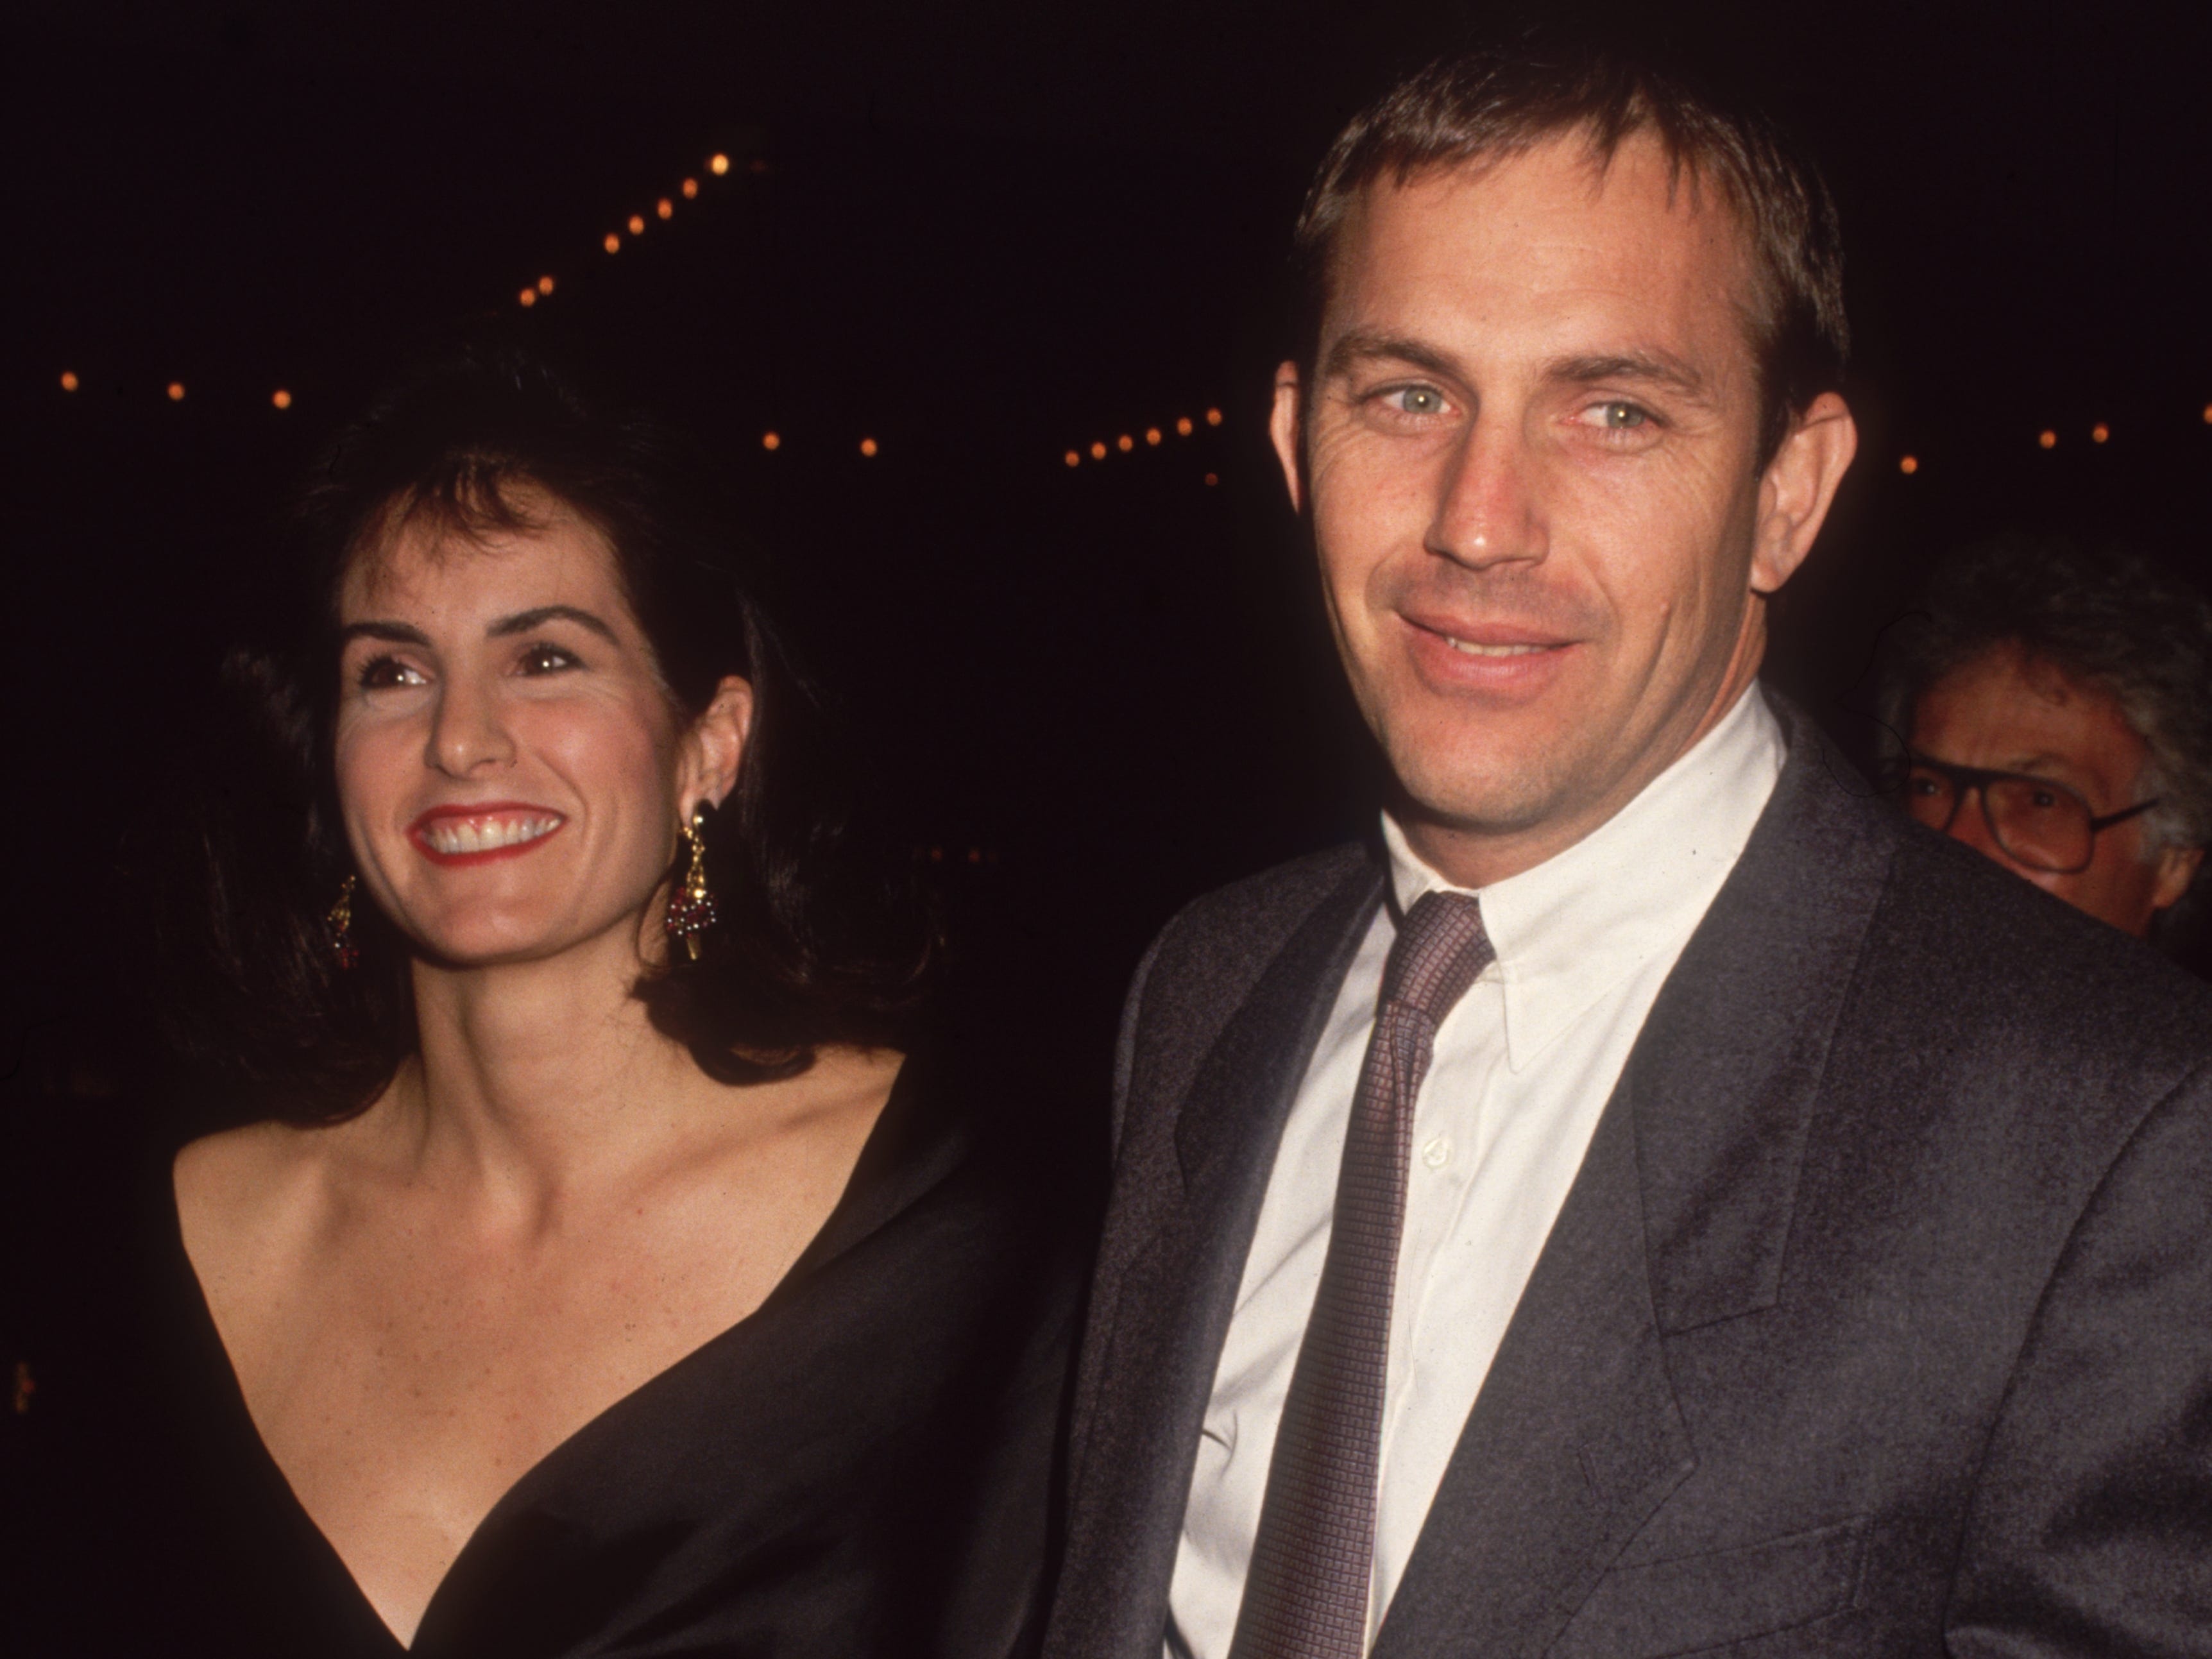 Kevin Costner und seine Frau Cindy Silva im Jahr 1992, zwei Jahre vor ihrer Scheidung.